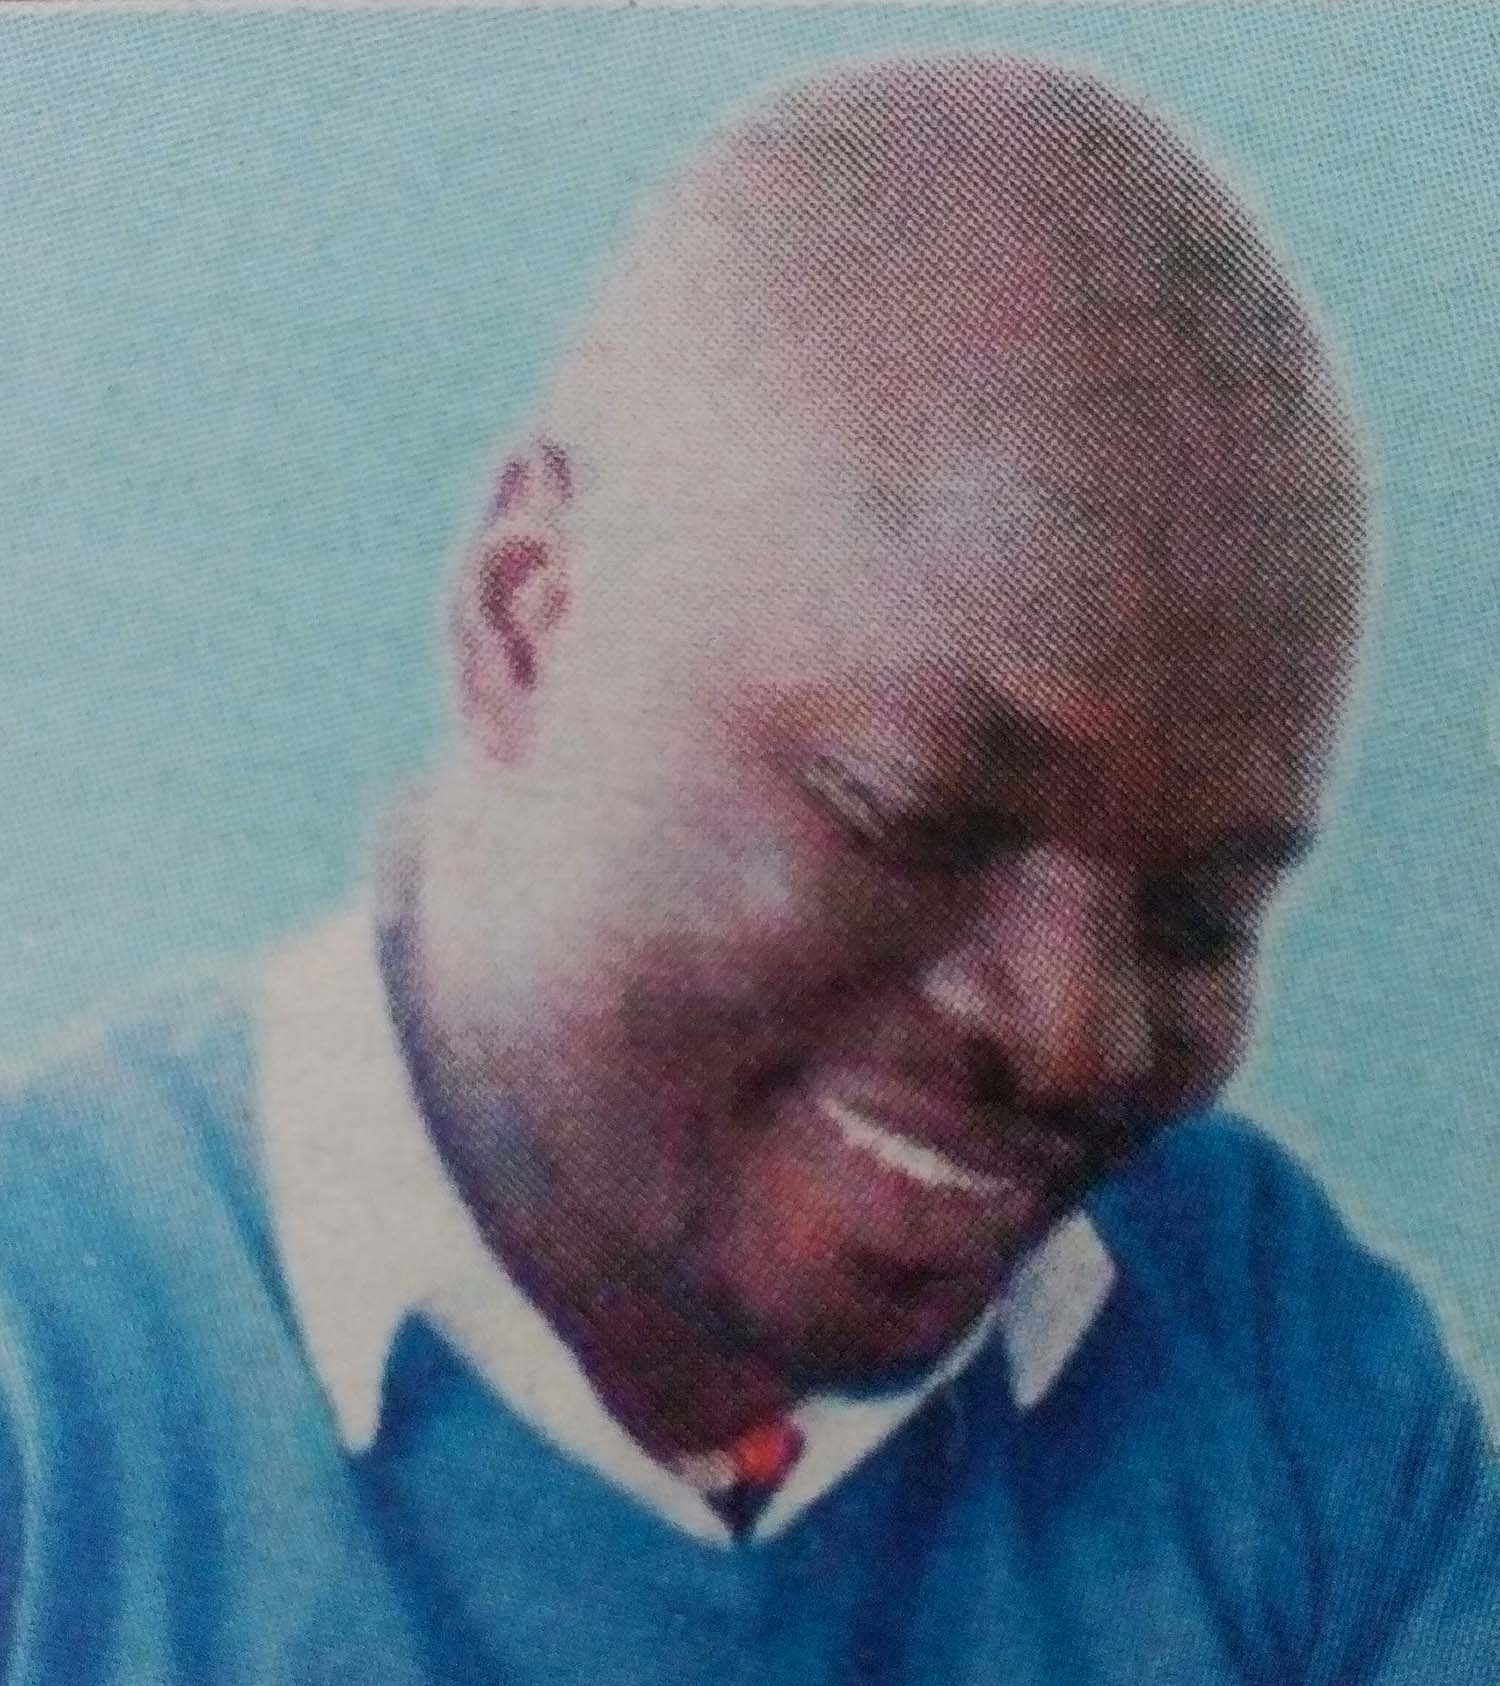 Obituary Image of Daniel Otieno Ogada (Mzito)